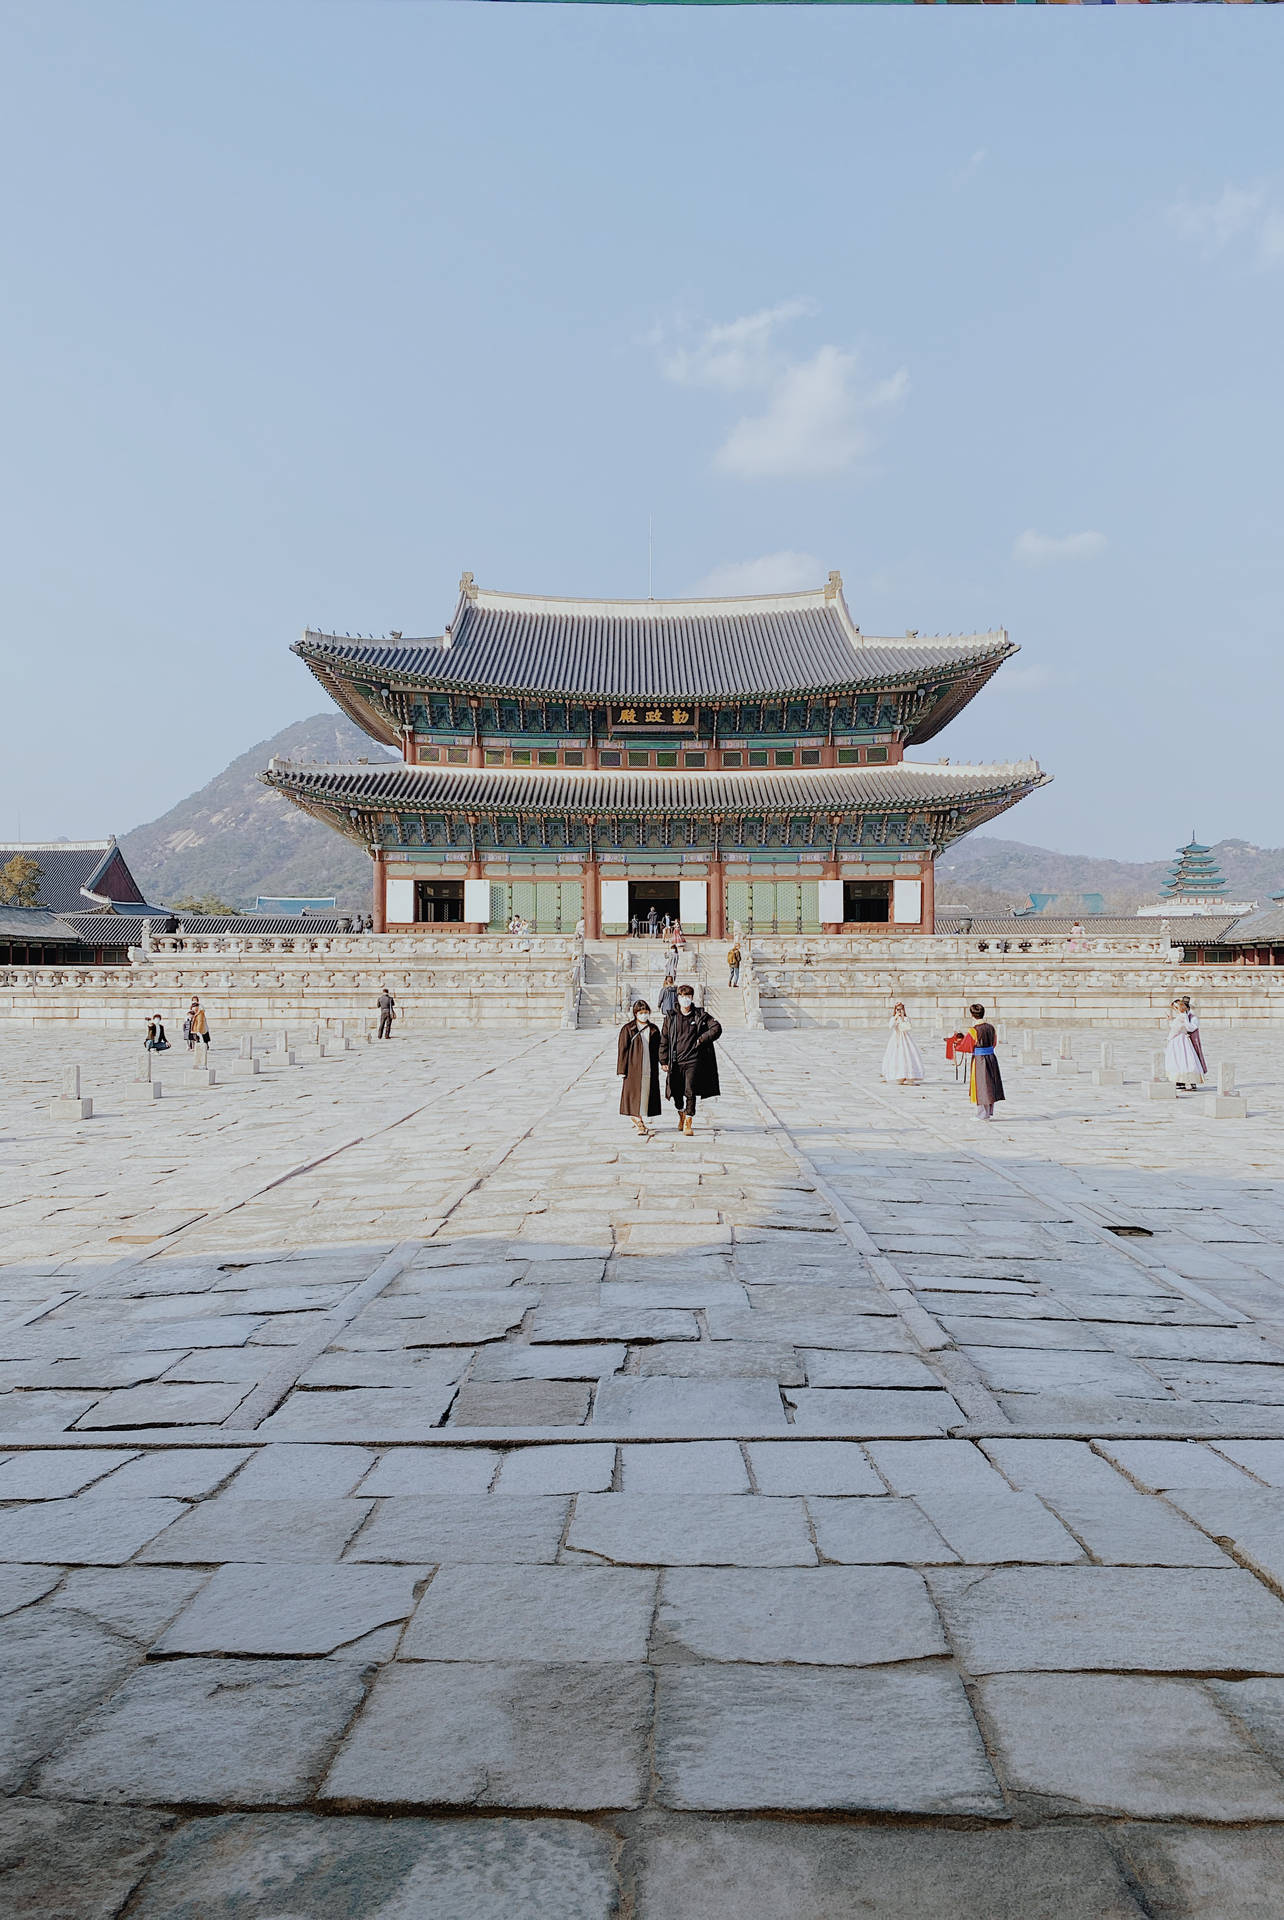 Seoul Geunjeongjeon Throne Hall